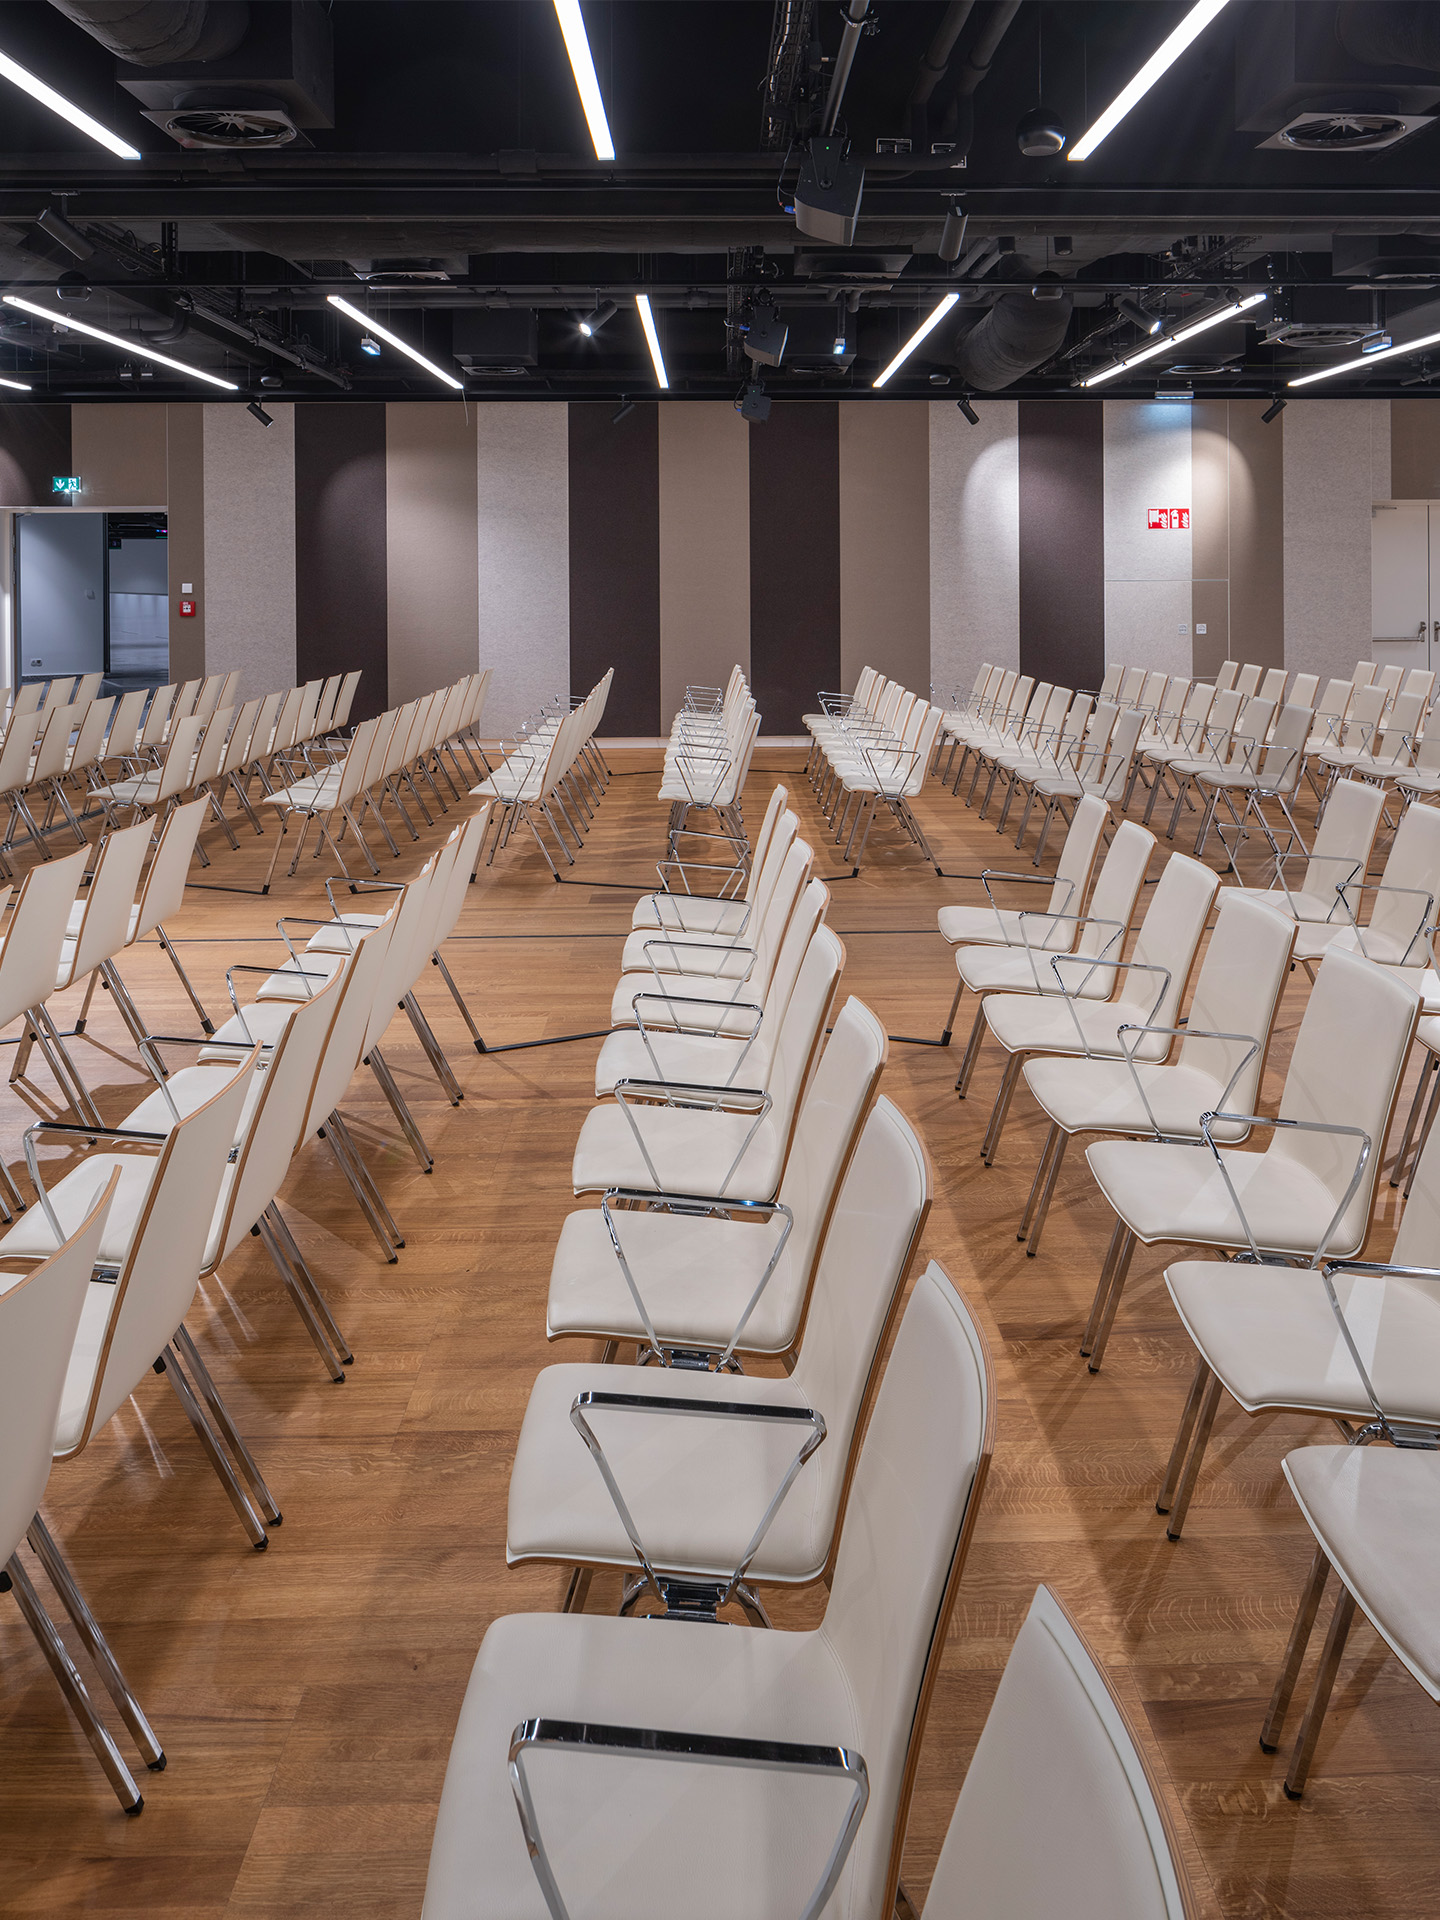 Foto: Sitzreihen in einem Saal mit Holzboden, gestreifte Tapete